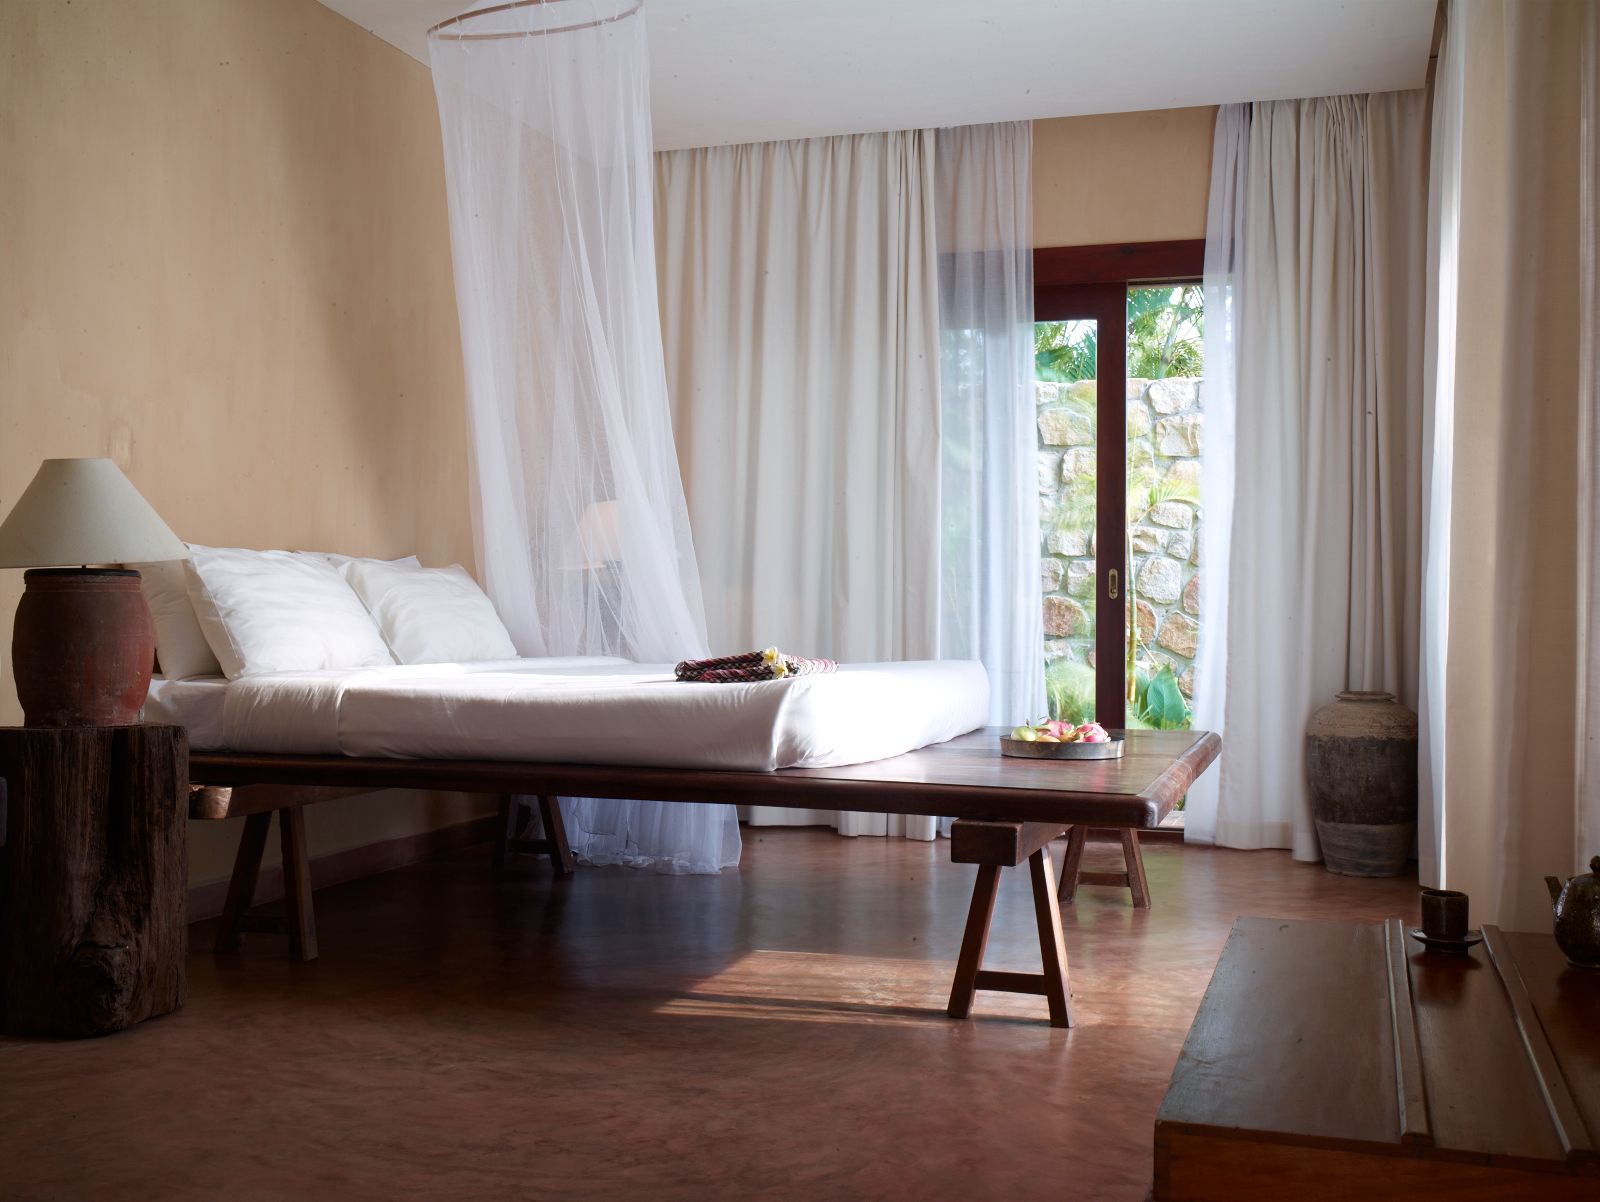 Guest suite bedroom at Knai Bang Chatt resort in Cambodia